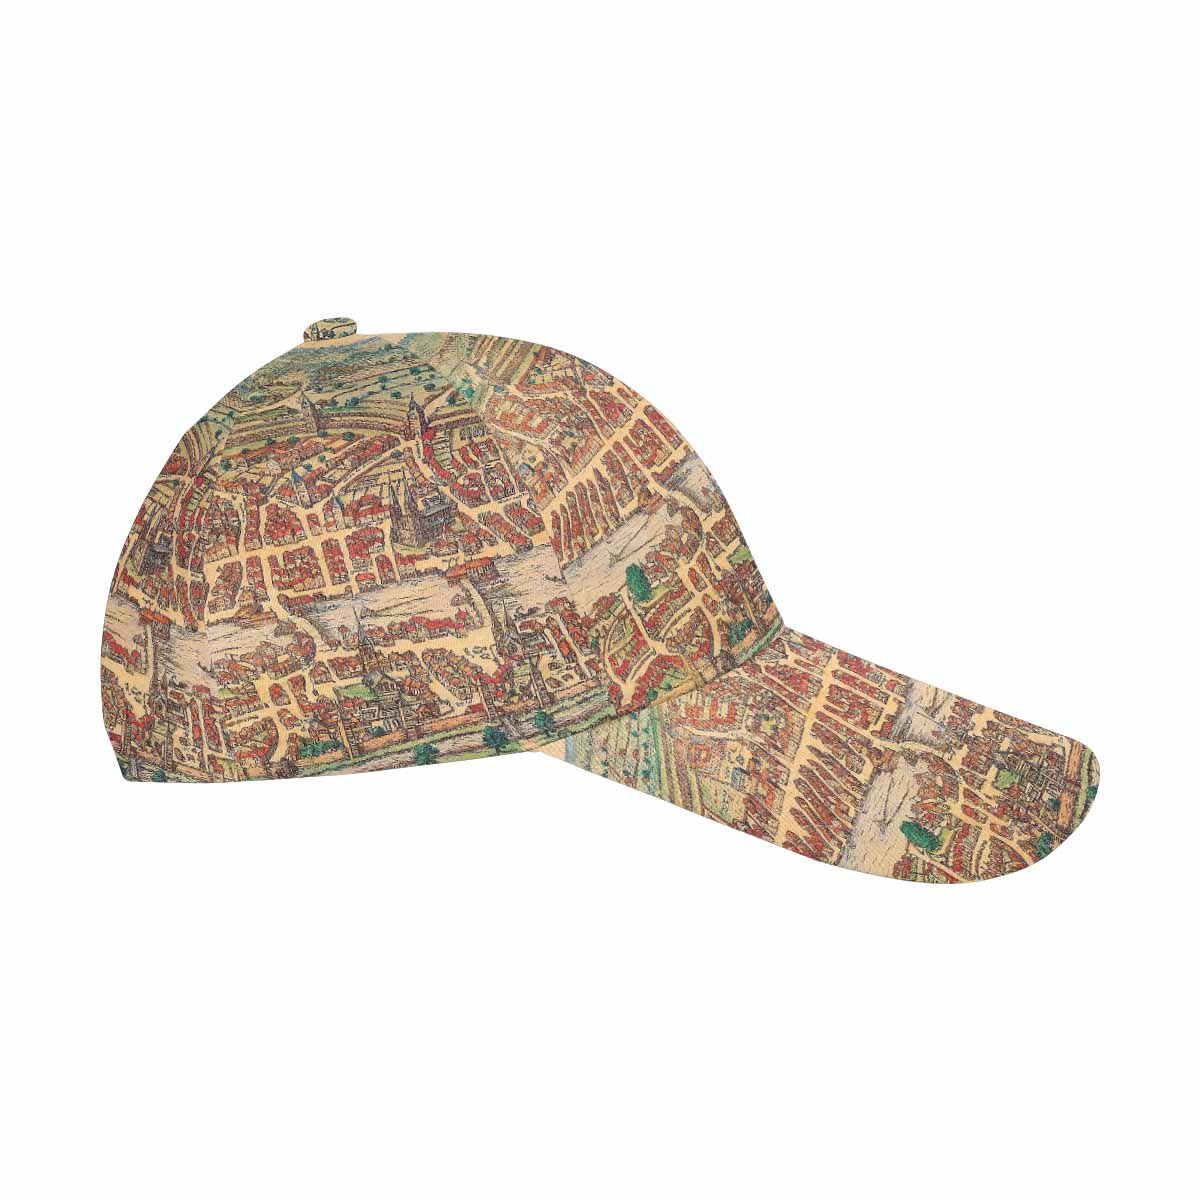 Antique Map design dad cap, trucker hat, Design 24